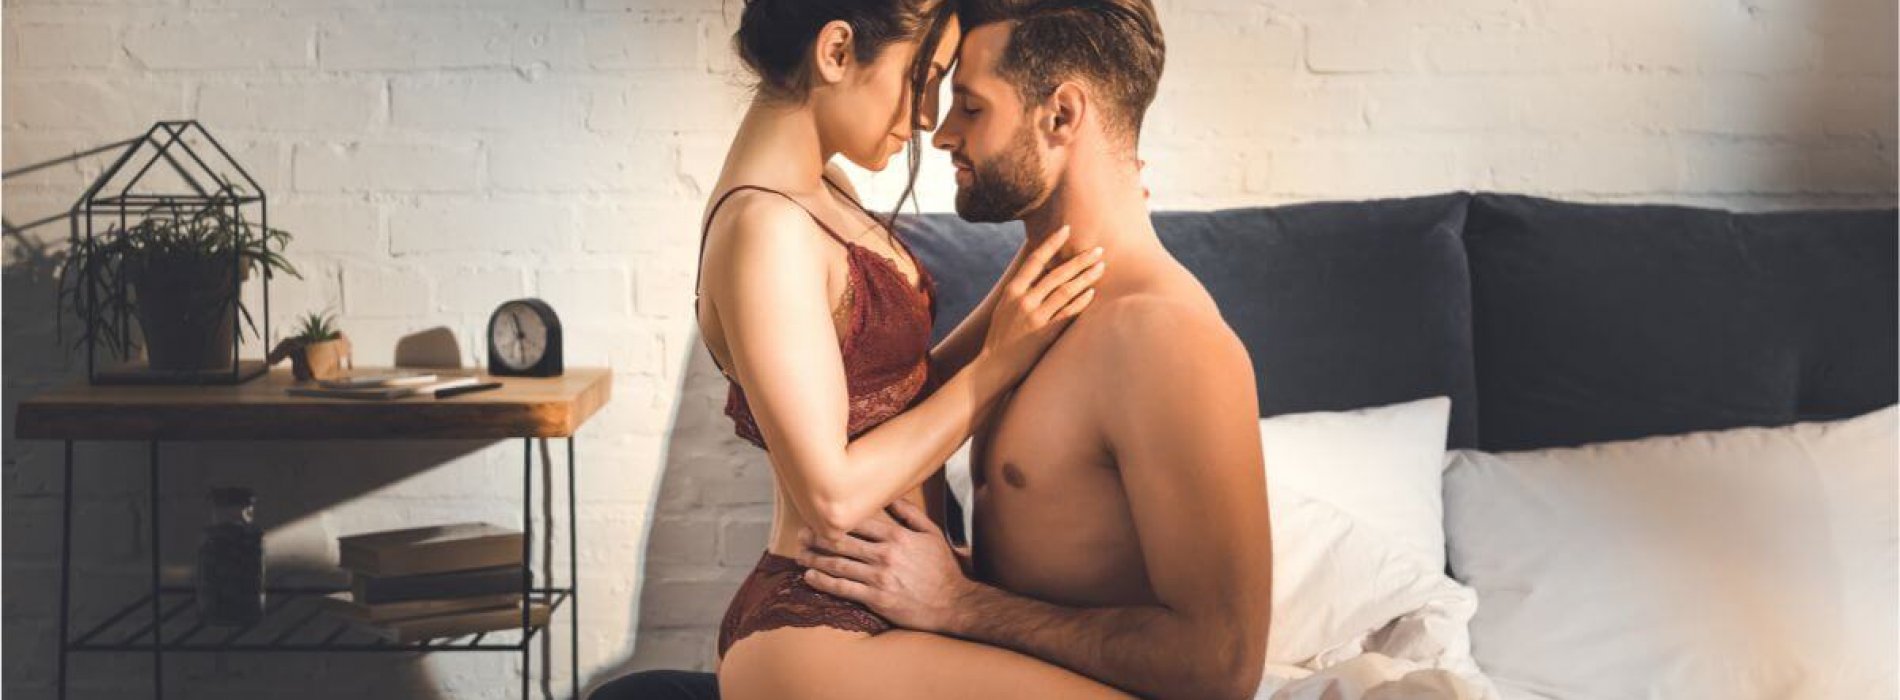 Jak przygotować się do seksu analnego? Porady dla mężczyzn